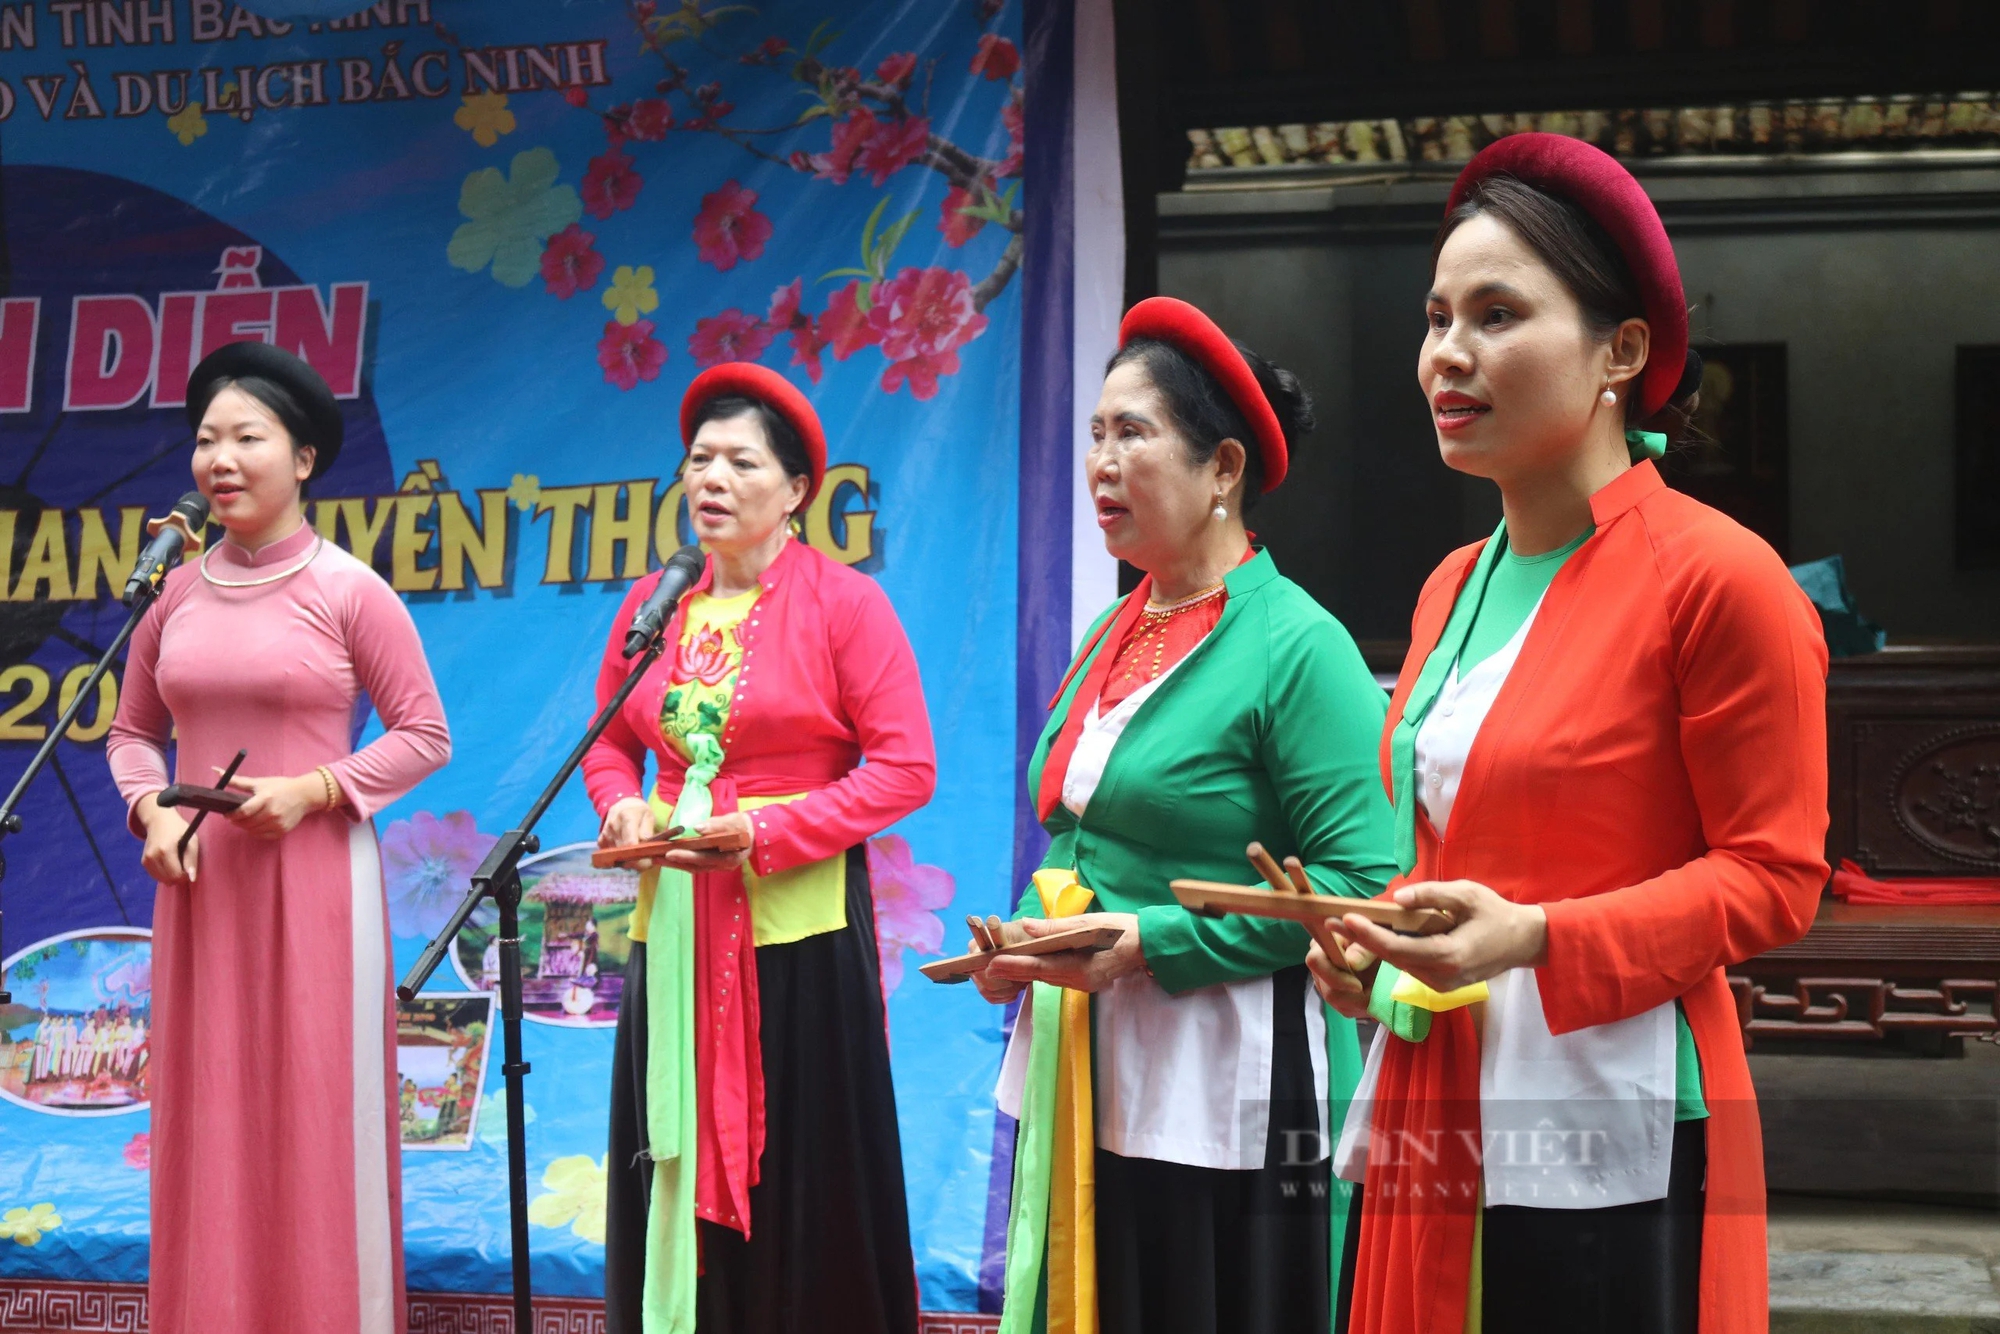 Bắc Ninh: Trình diễn nghệ thuật dân gian truyền thống tại di tích quốc gia đặc biệt- Ảnh 4.